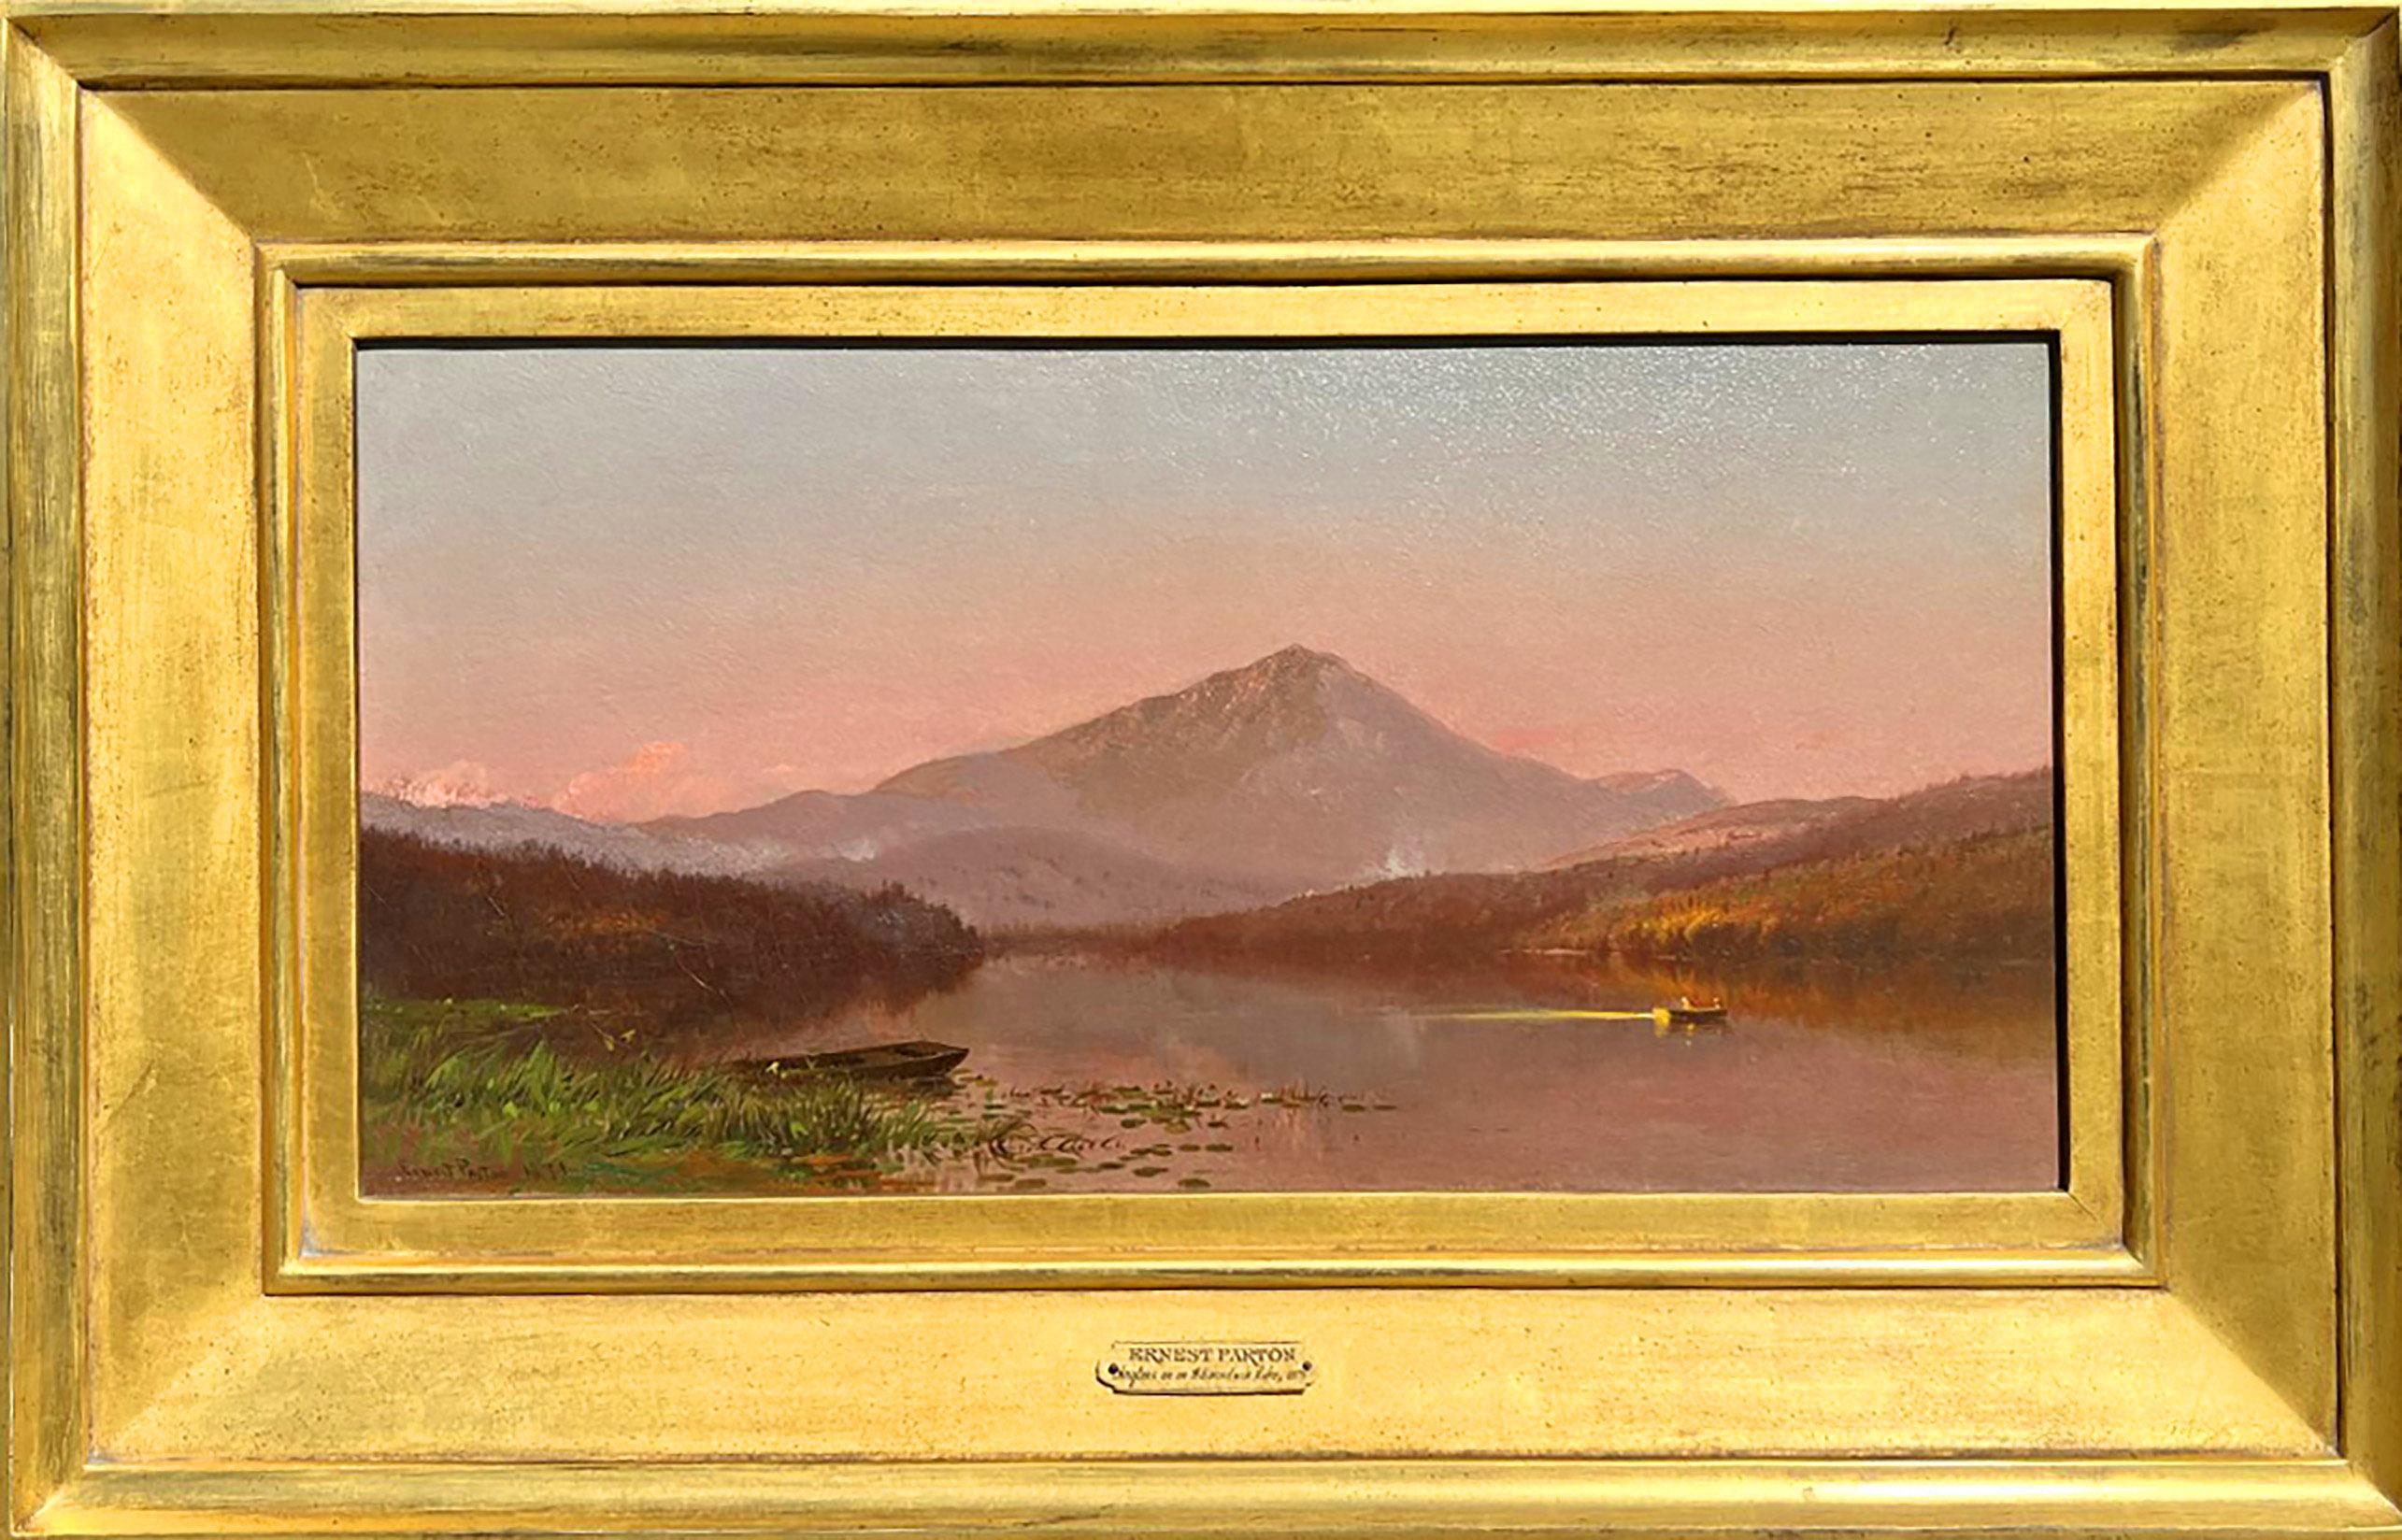 Hudson River School Künstler Ernest Parton (1845-1933) "Anglers on an Adirondack Lake" ist Öl auf Leinwand, misst 10 x 20 Zoll, und ist signiert und datiert 1871 auf der unteren linken Seite. Das Werk ist in einem zeitgemäßen Rahmen gerahmt und kann